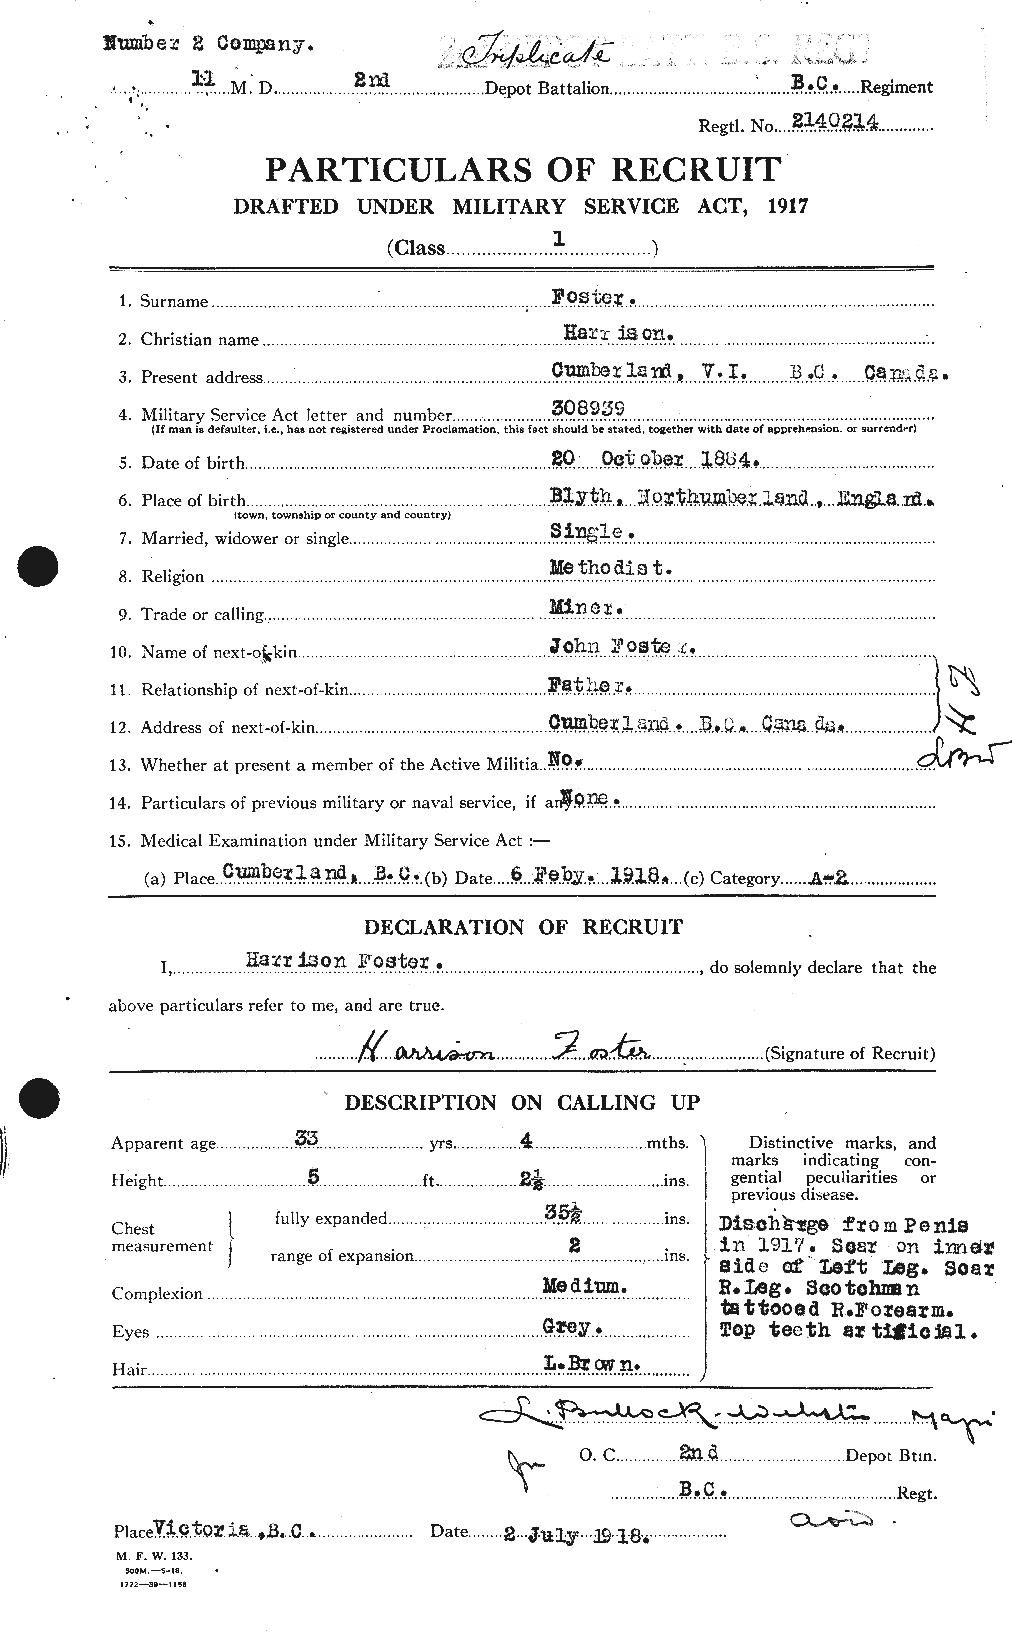 Dossiers du Personnel de la Première Guerre mondiale - CEC 330733a